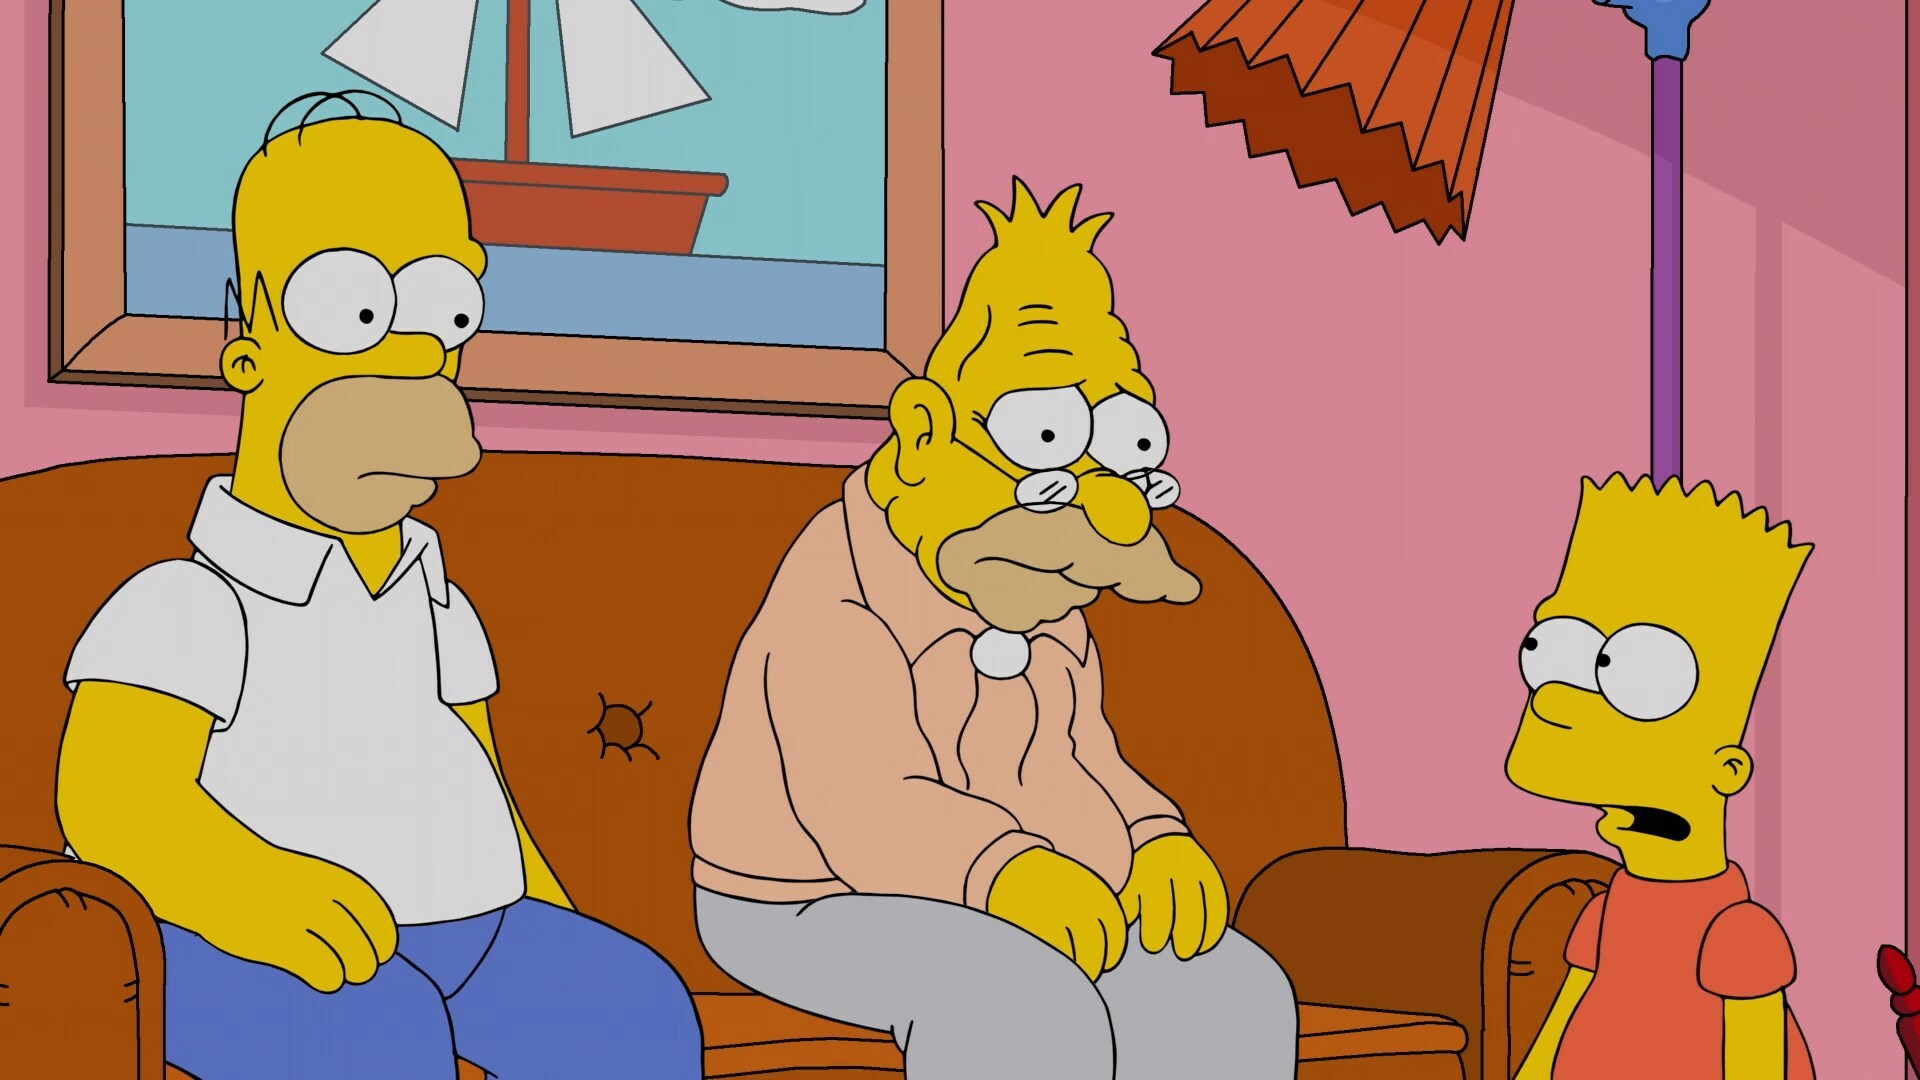 The.Simpsons.S33E02.WEB-DL.1080p.Ukr.Eng.[Mazepa].mkv_snapshot_04.34.274.jpg